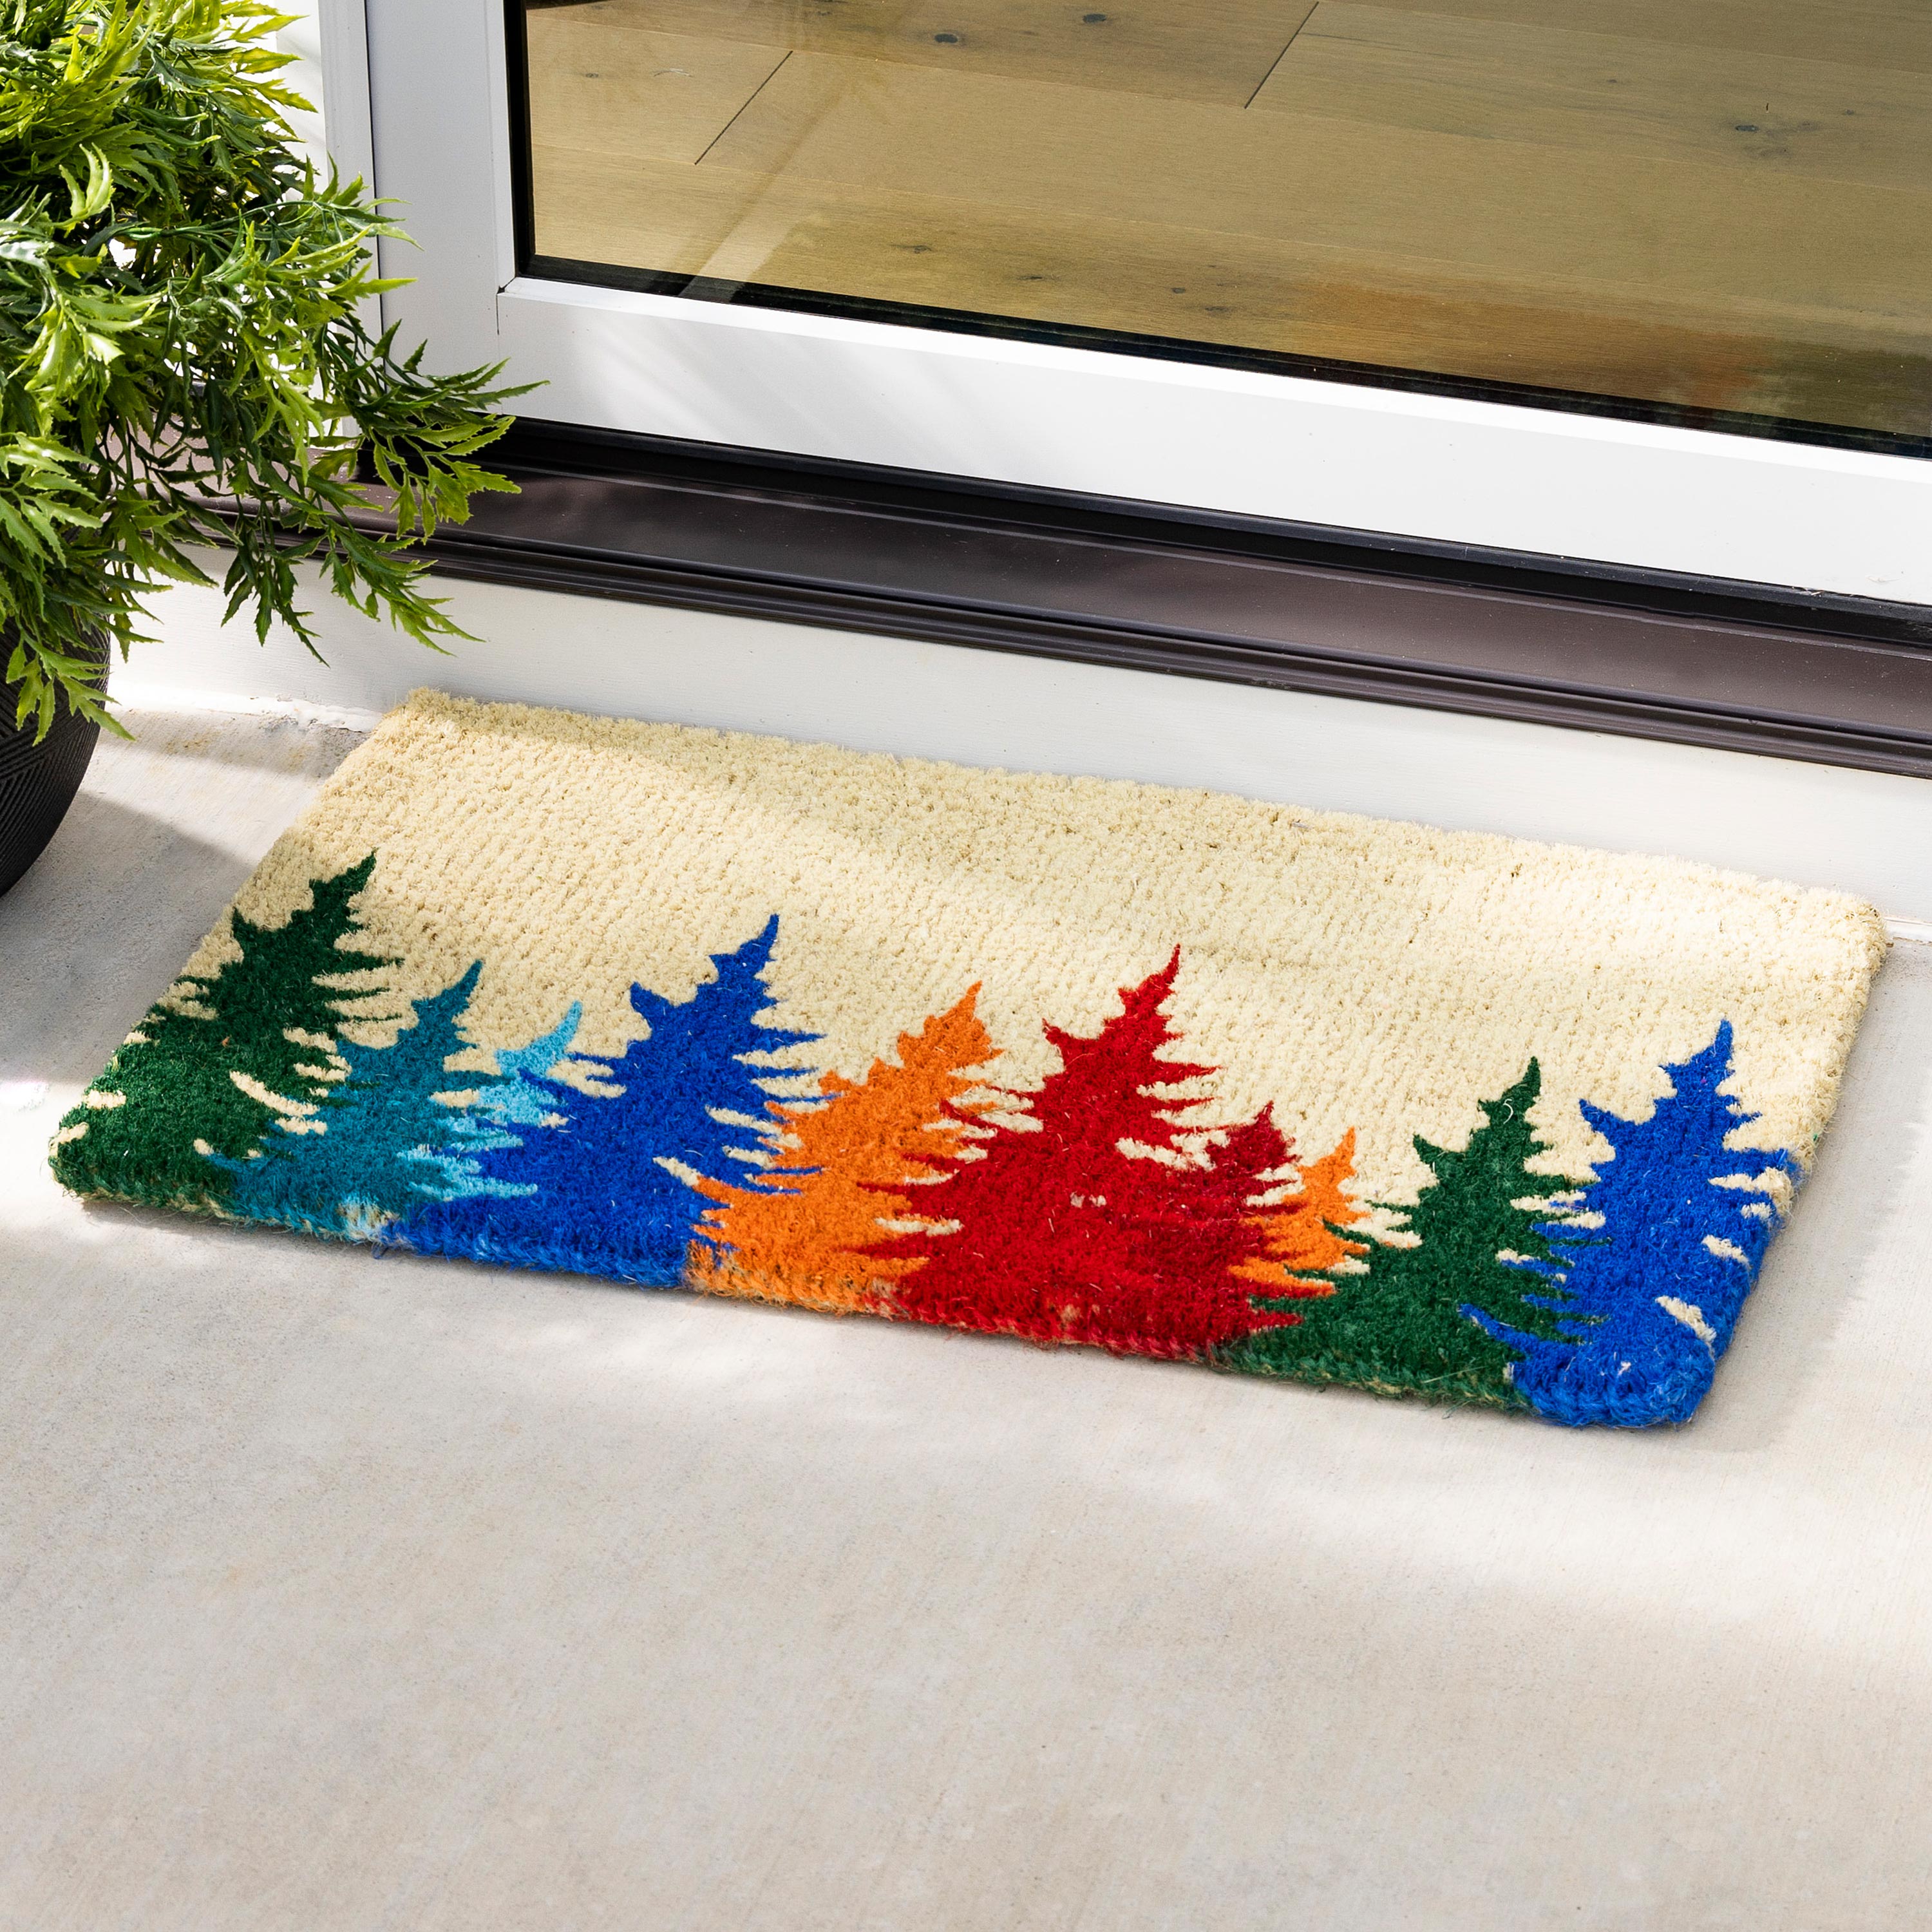 Three Pine Tree Coir Doormat Winter Welcome / Outdoor Lover